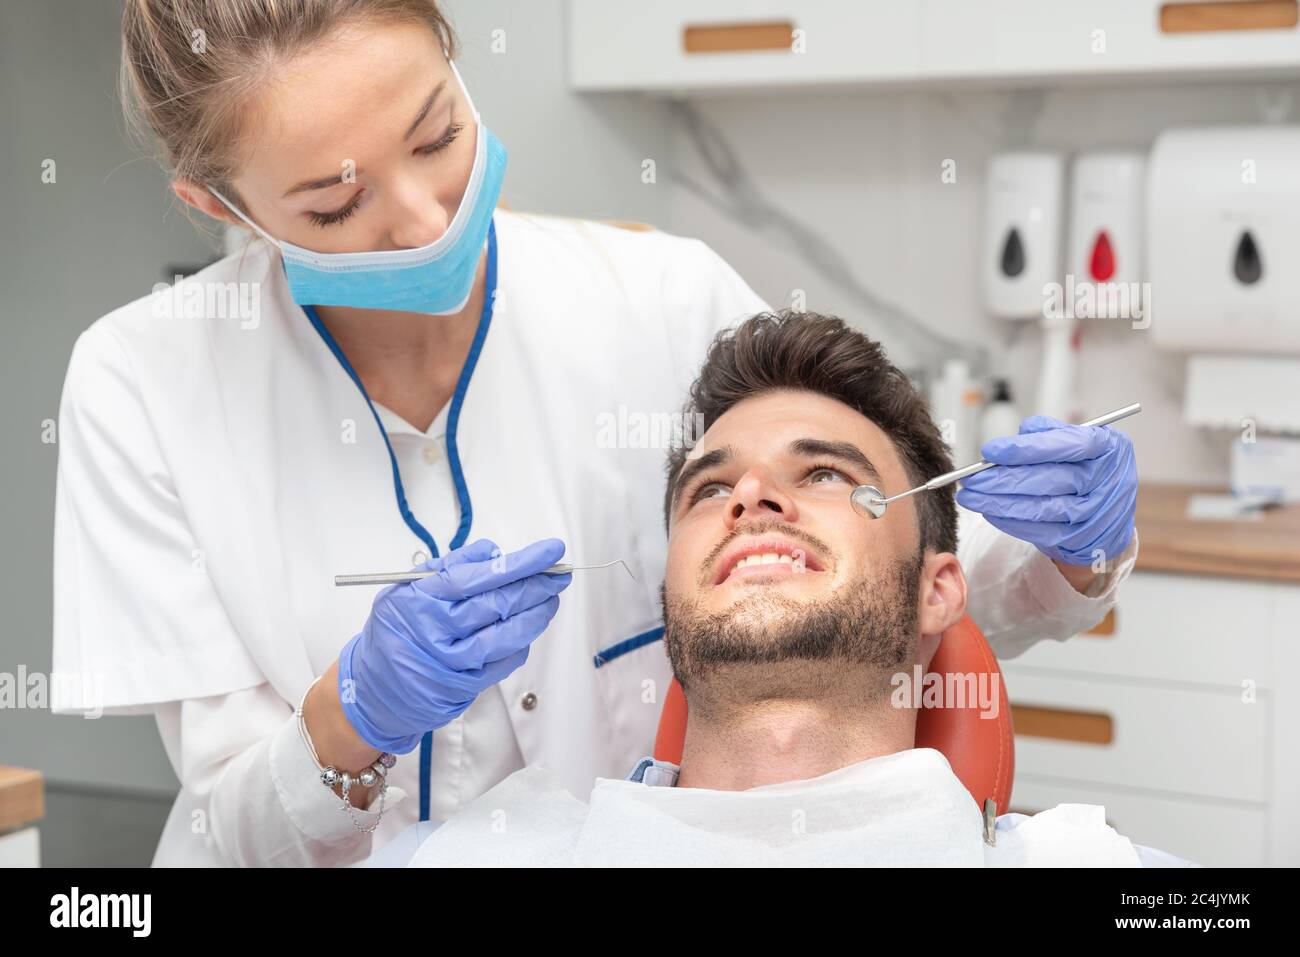 Ayant examiné les dents de l'homme à des dentistes. Aperçu de la prévention de la carie dentaire Banque D'Images